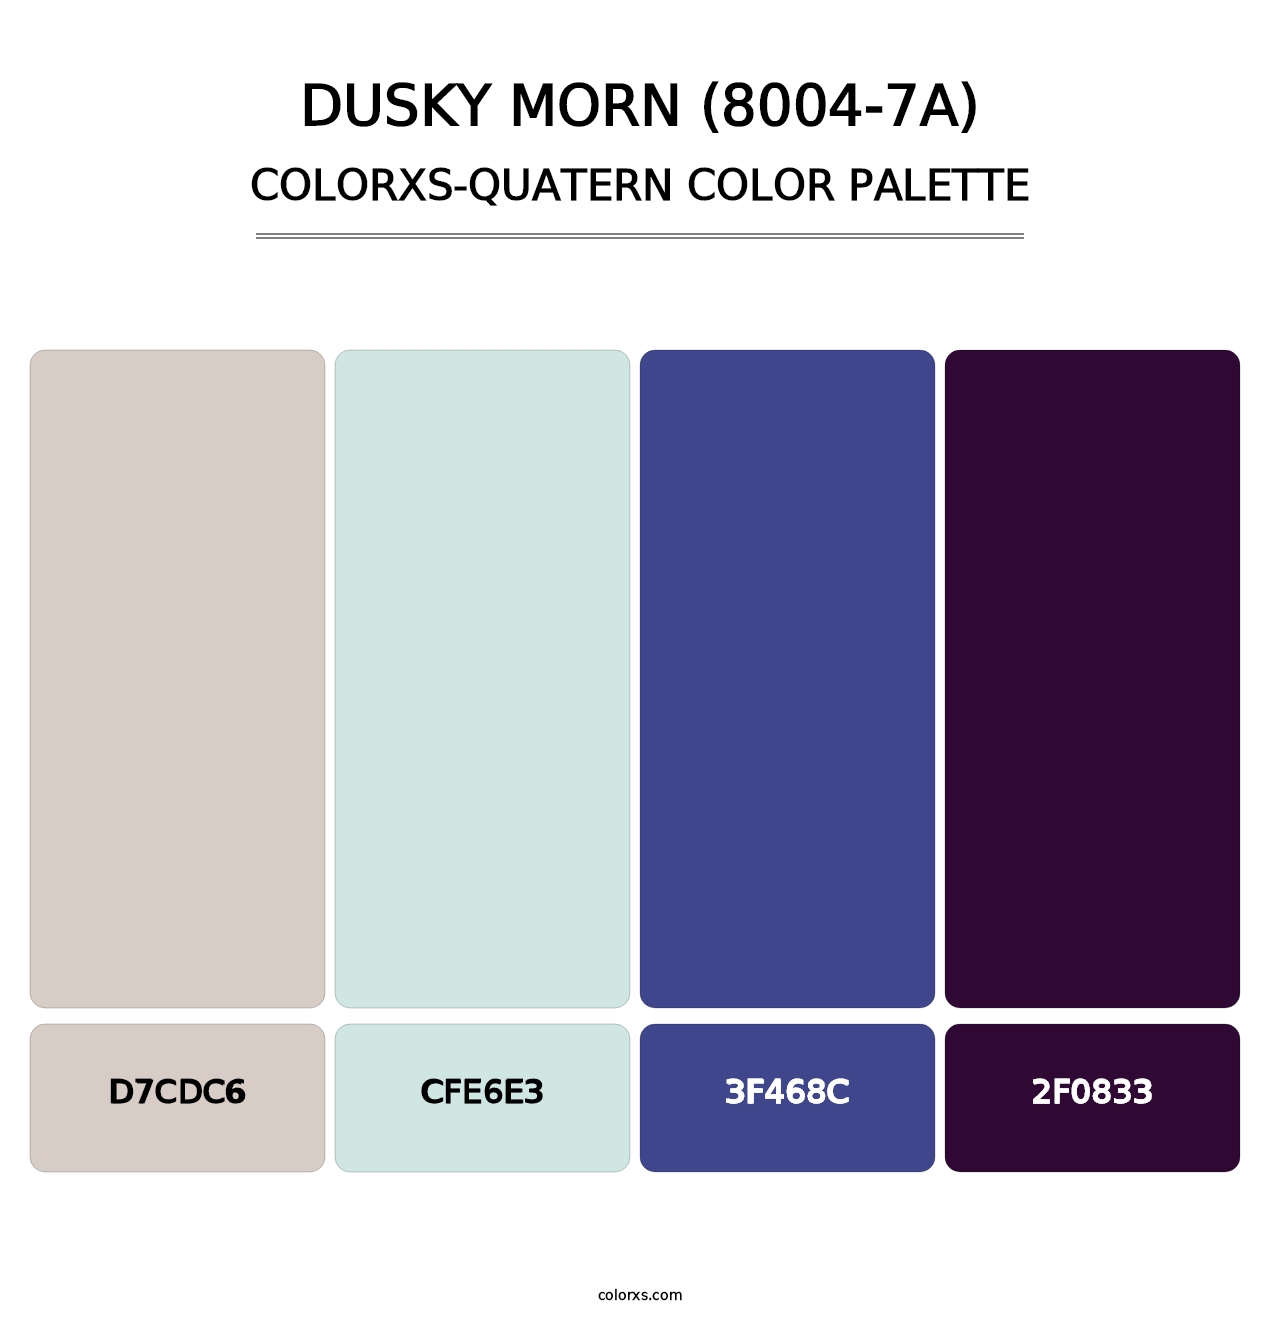 Dusky Morn (8004-7A) - Colorxs Quatern Palette